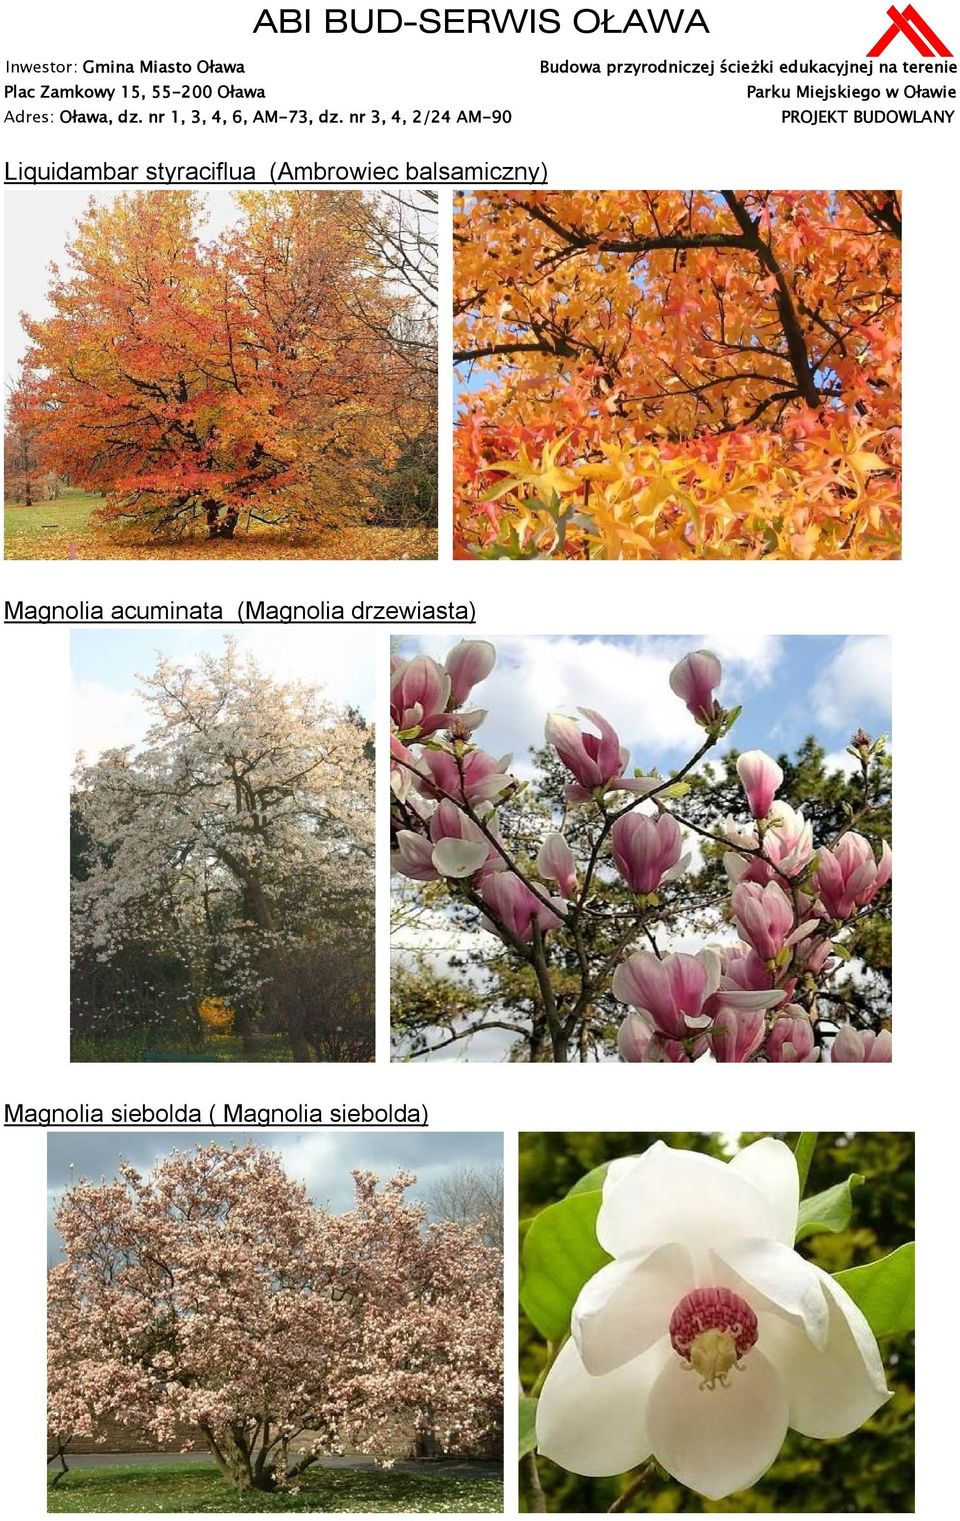 Magnolia acuminata (Magnolia